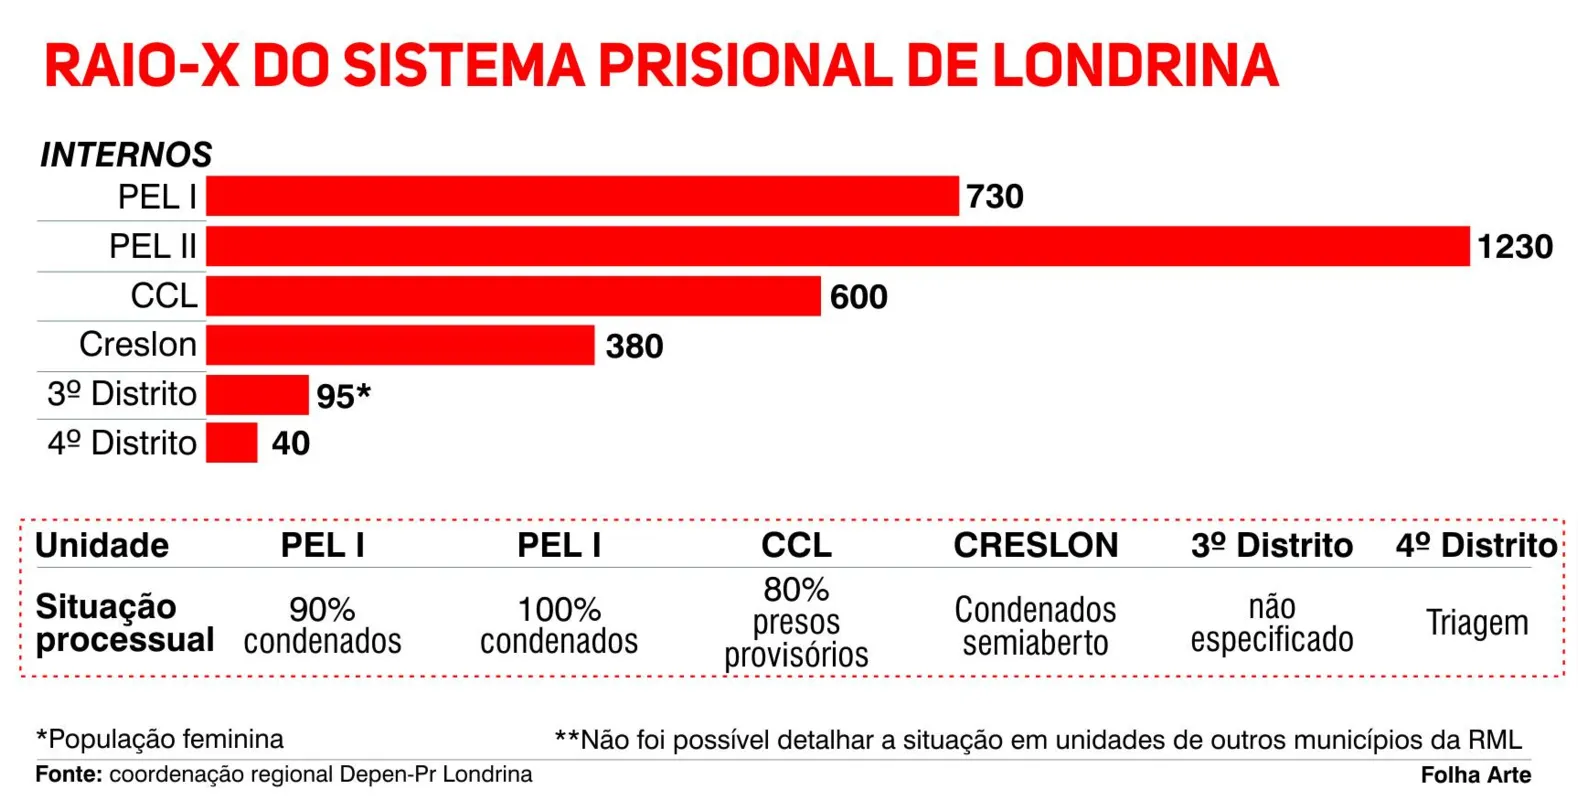 População carcerária de Londrina chega a quase três mil presos 